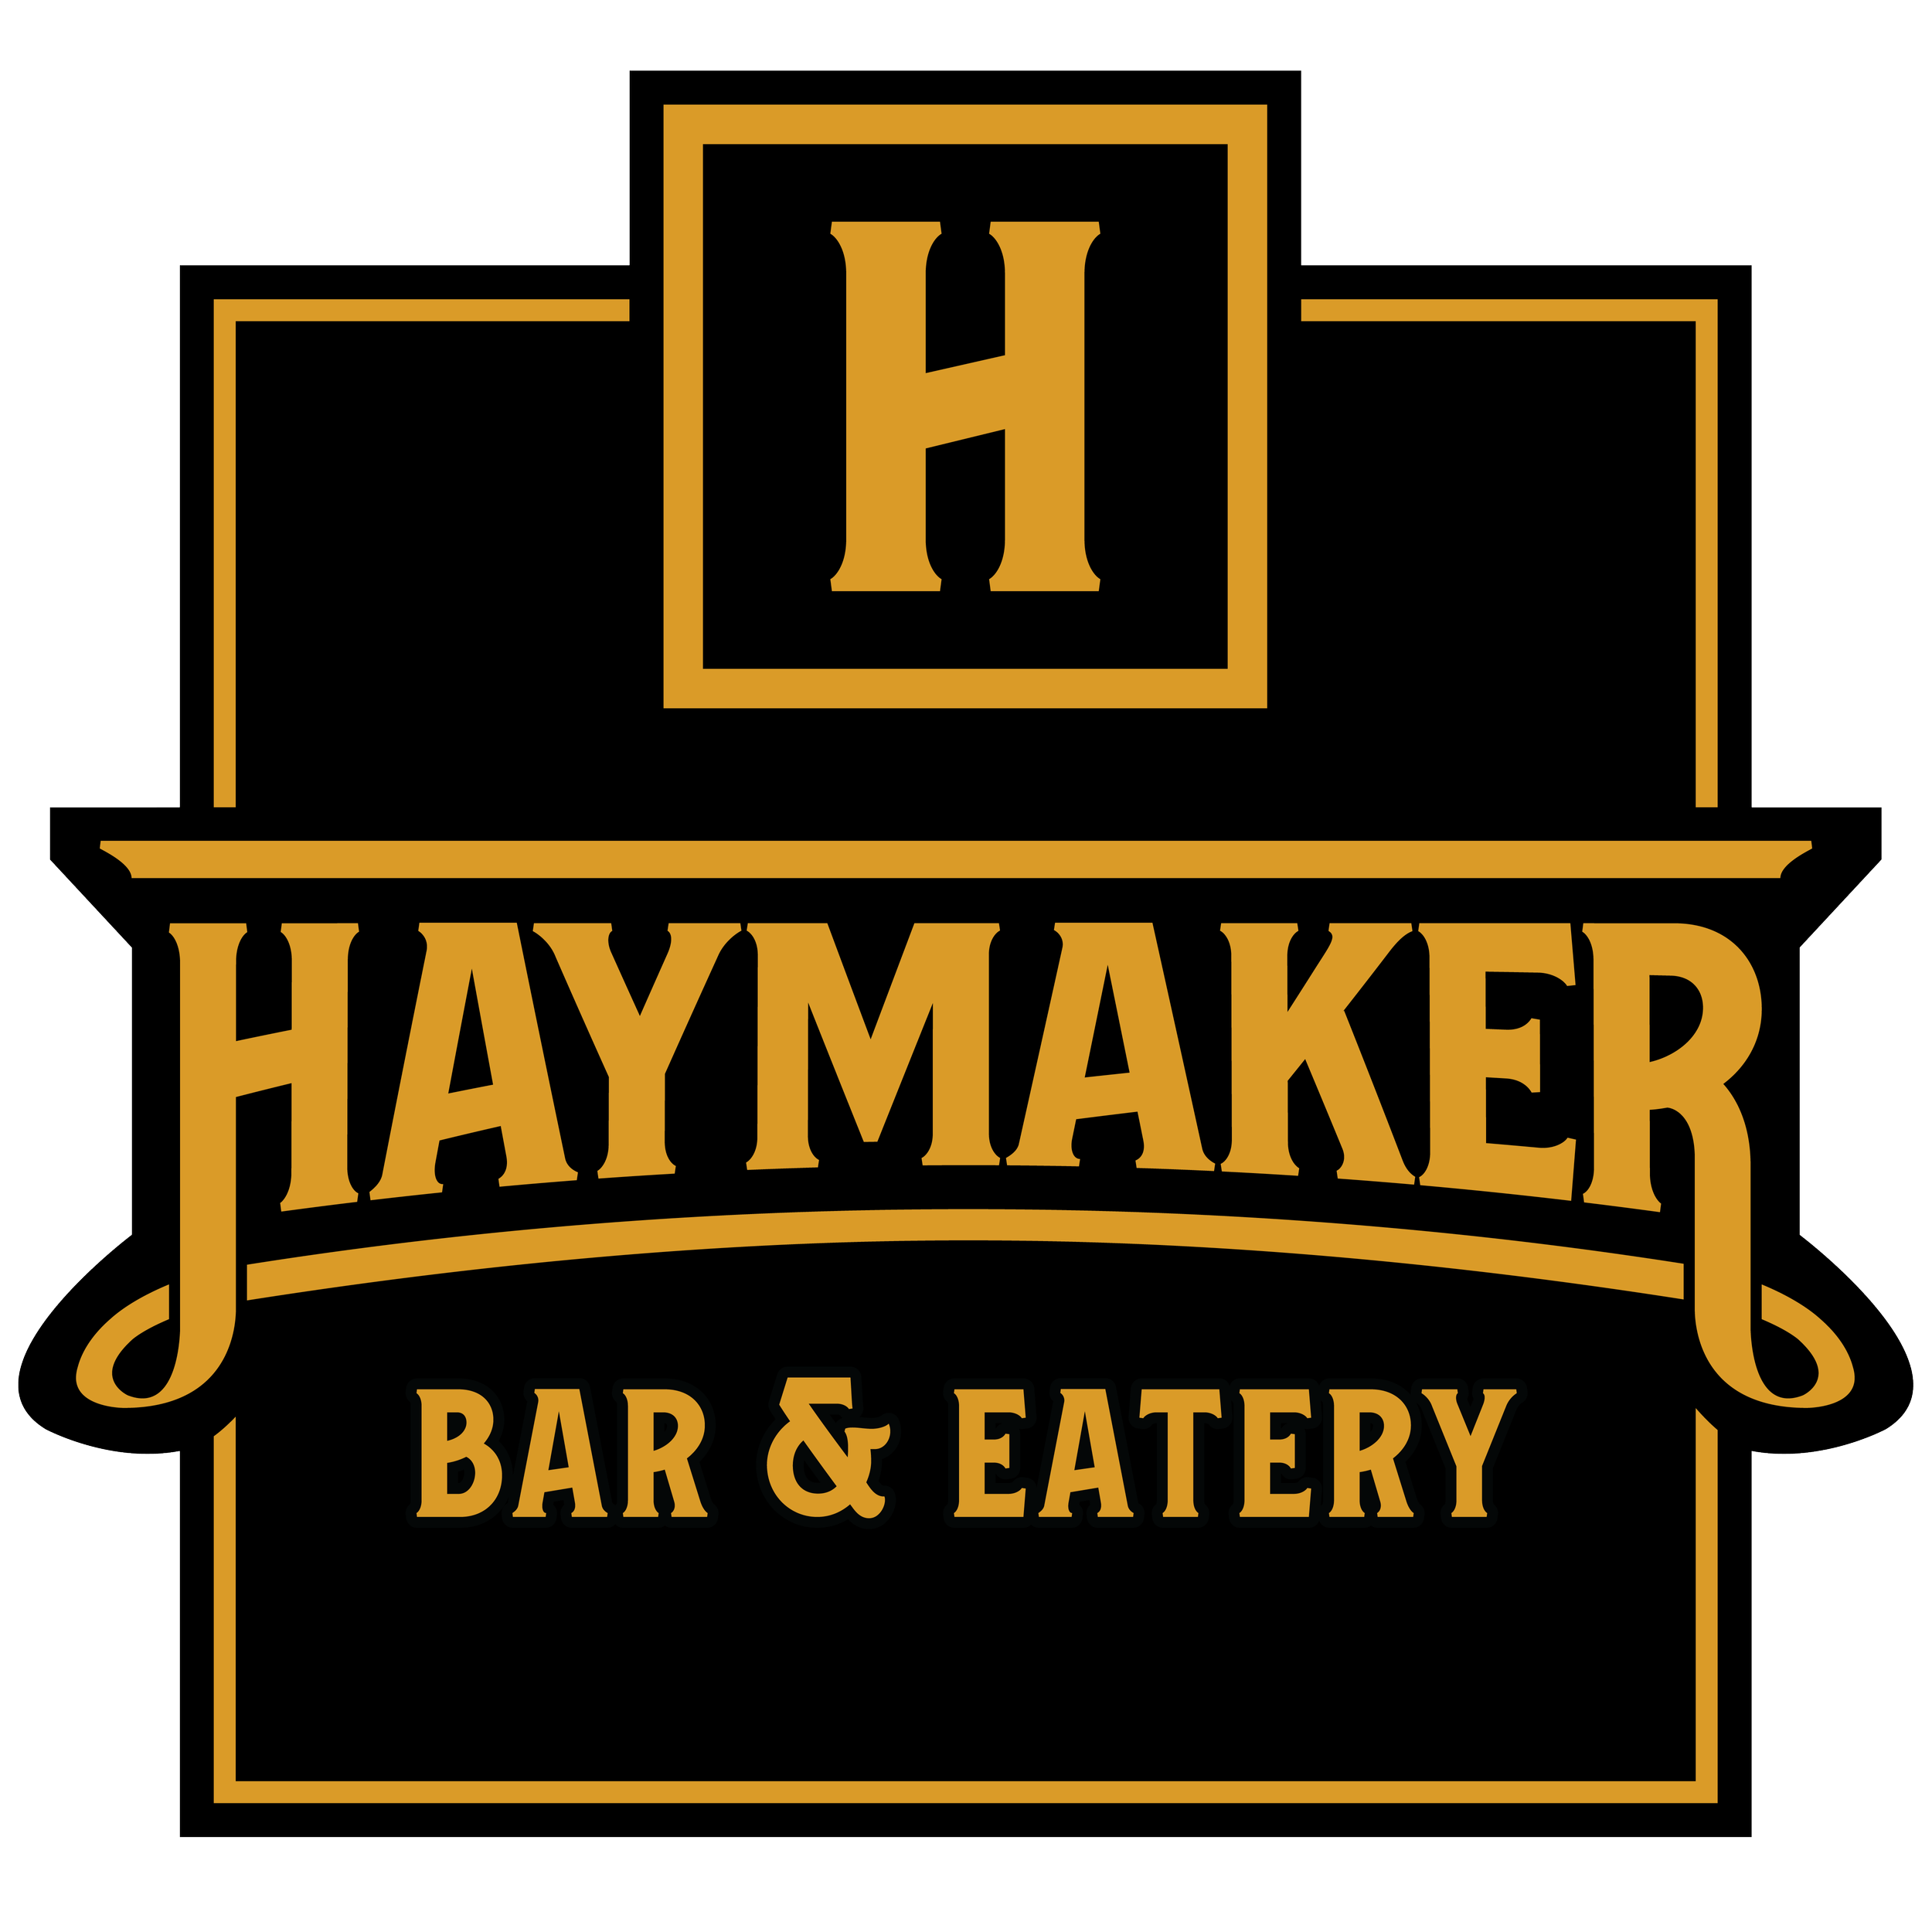 Haymaker Bar & Eatery